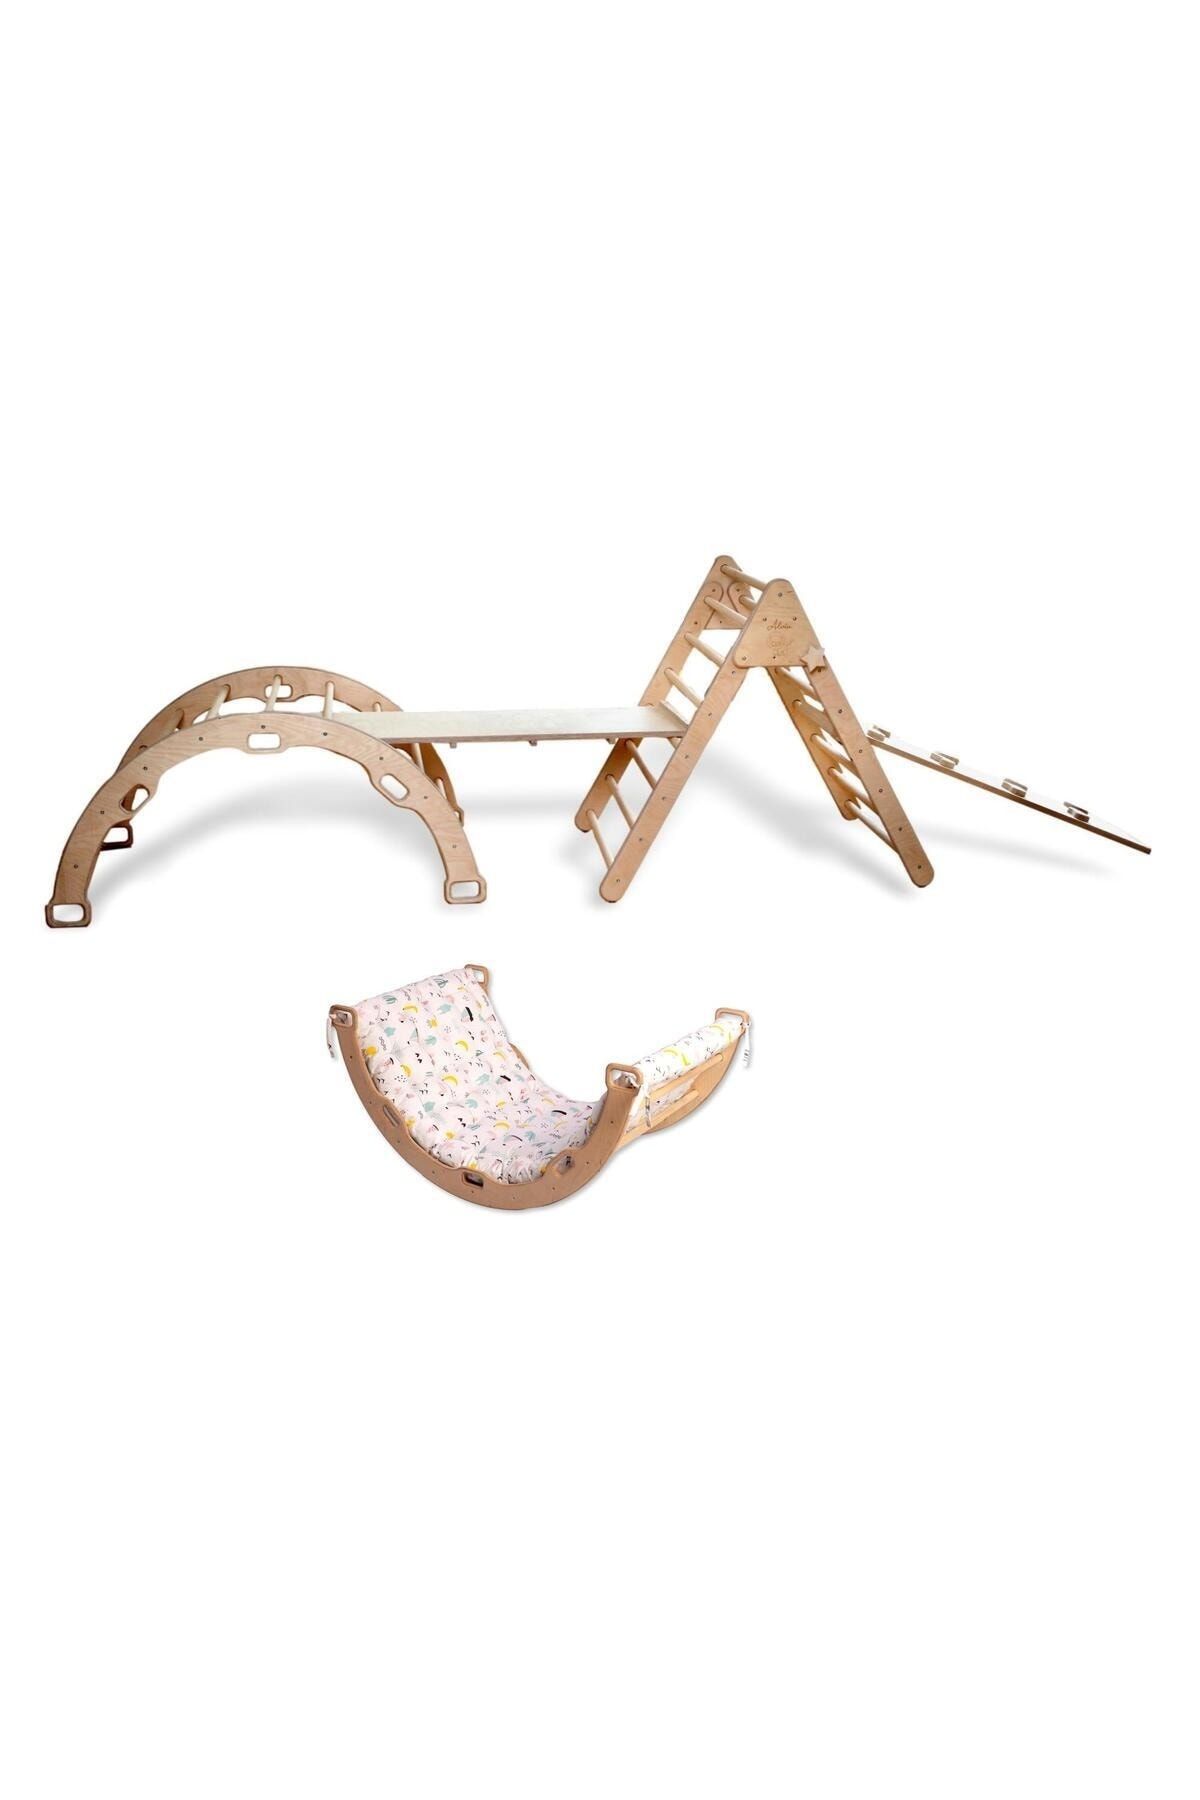 KIDOPPO Pikler Tırmanma Seti | Montessori Tam Set Ve Yastık | Üçgen Kemer 2 Adet Rampa Flamingo Yastık